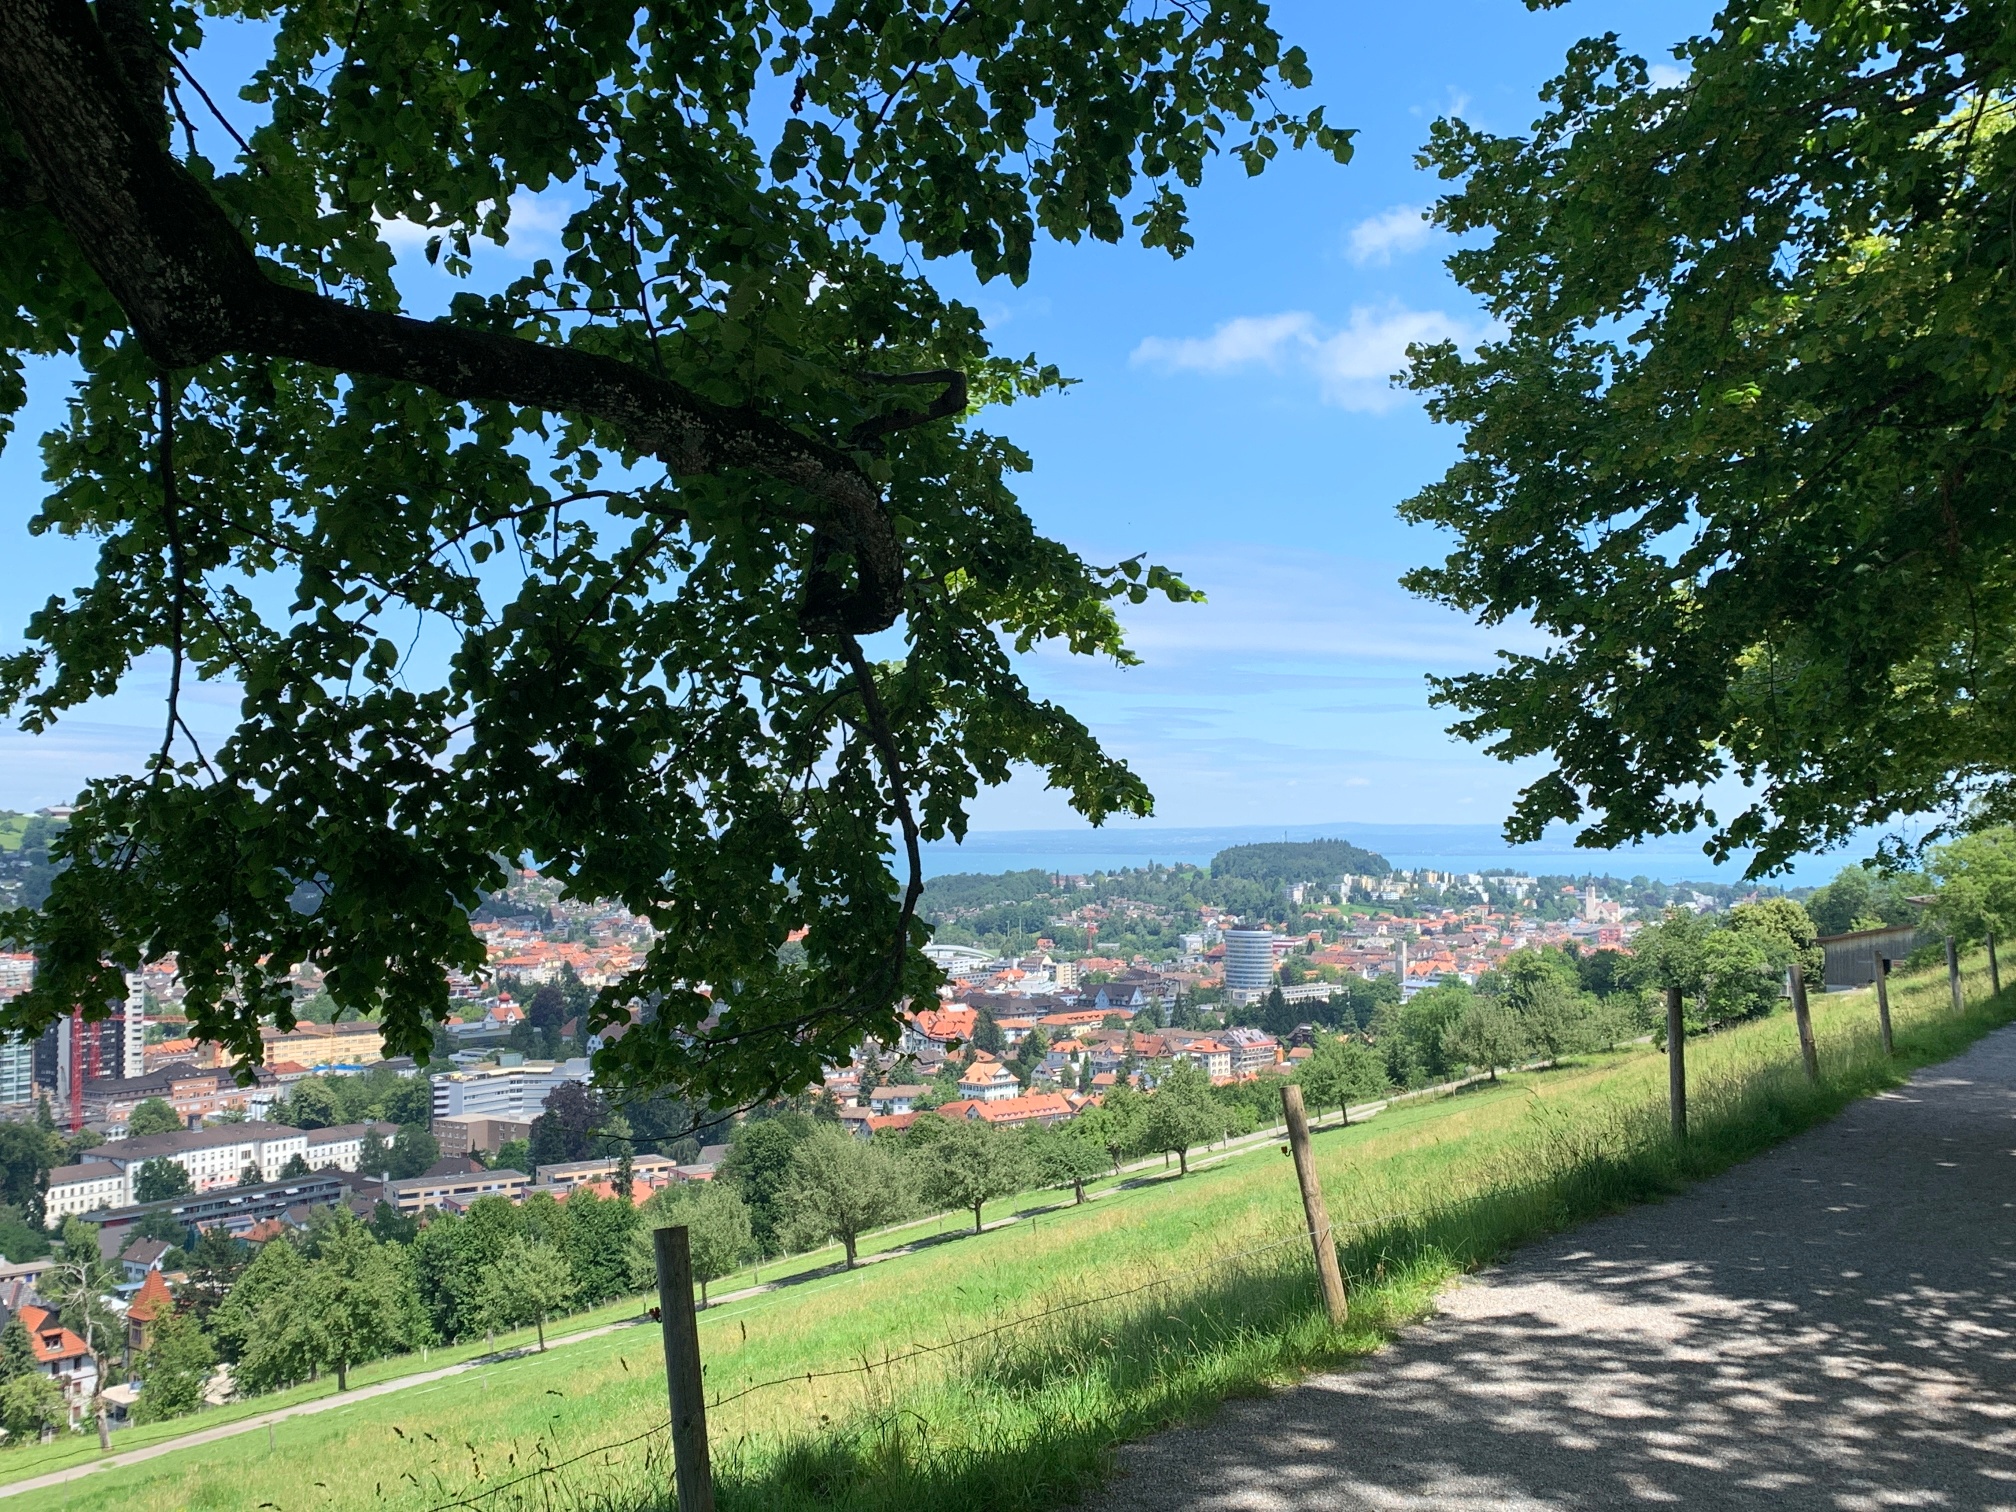 Landschaftlicher Rundweg in St. Gallen